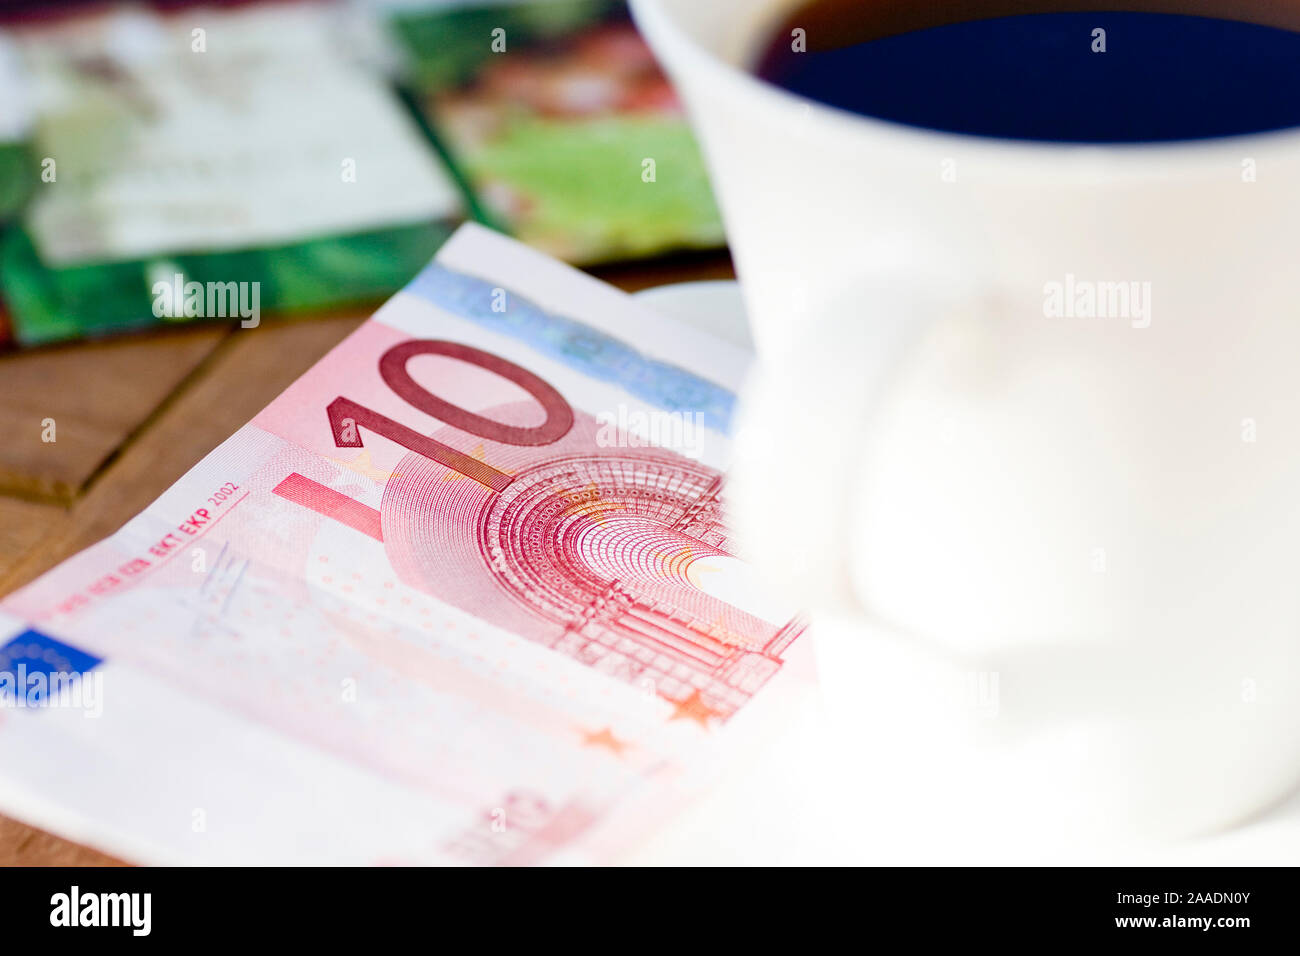 Zehn-Euro-Schein neben Kaffeetasse Foto Stock